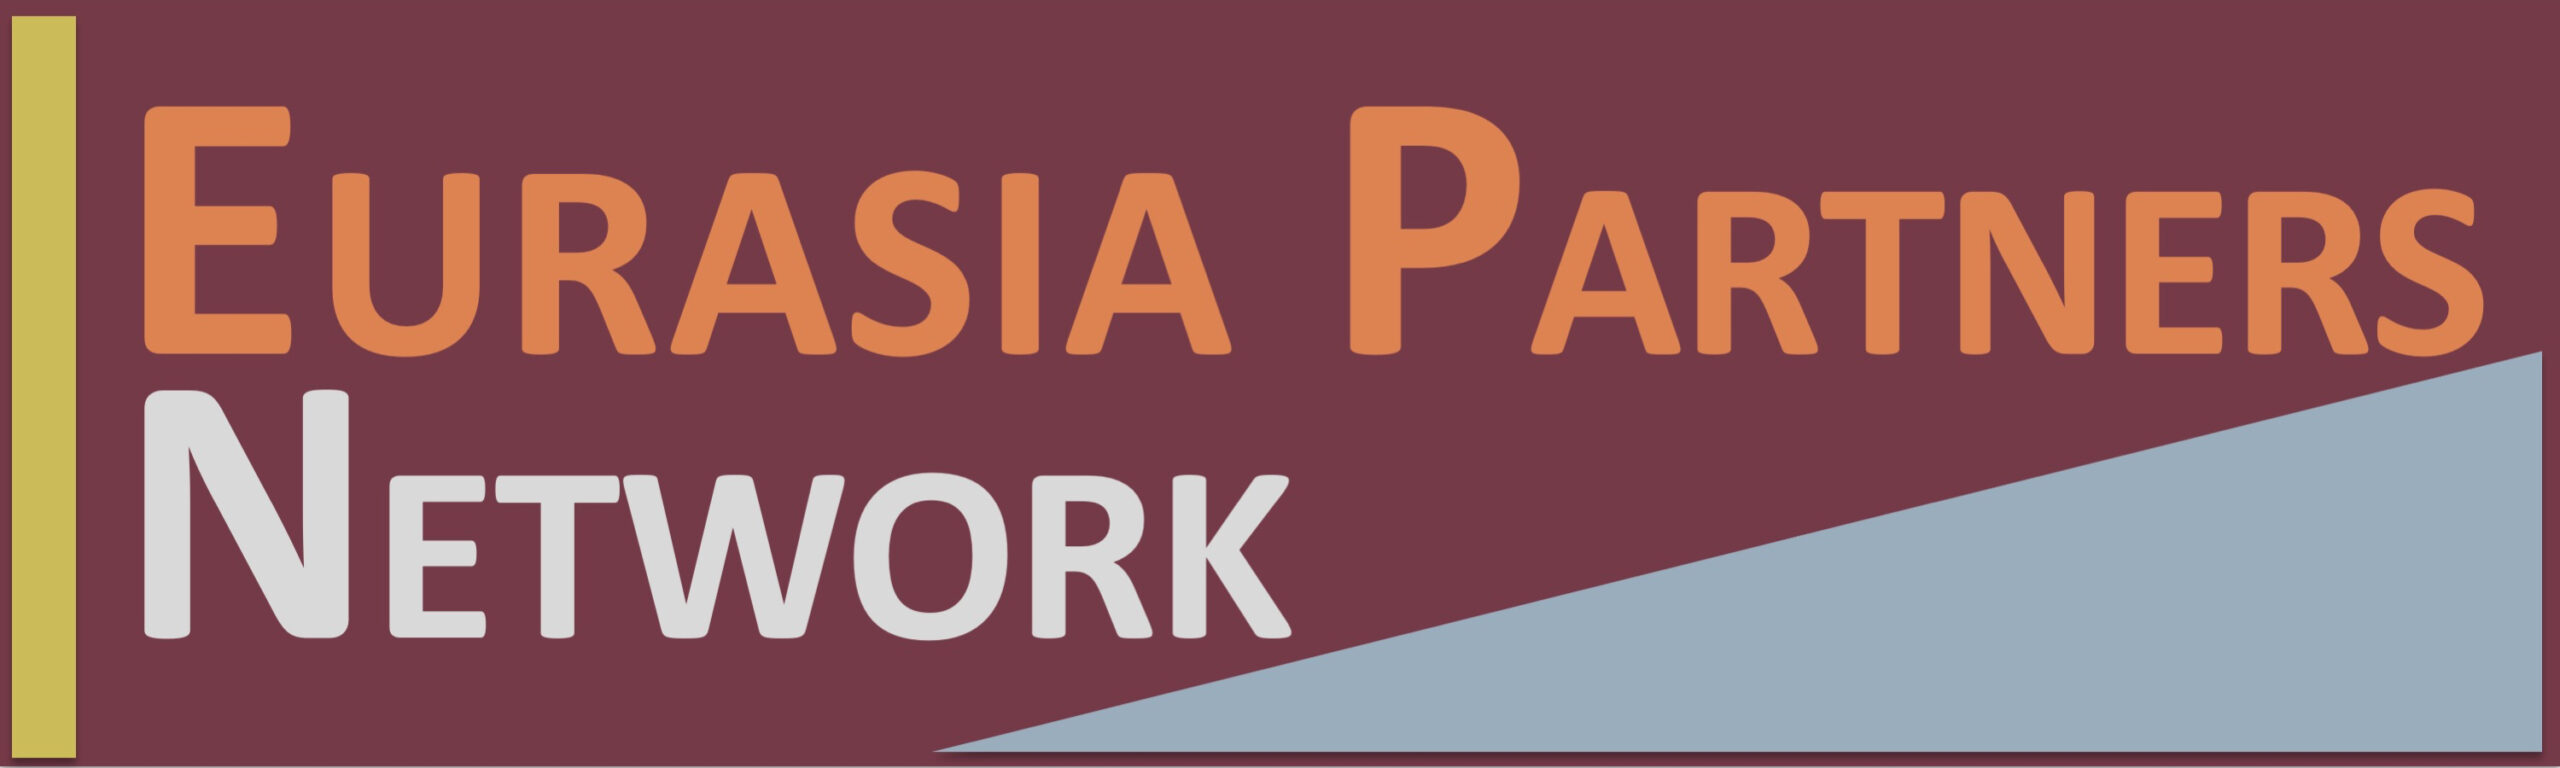 Eurasia Partners Network